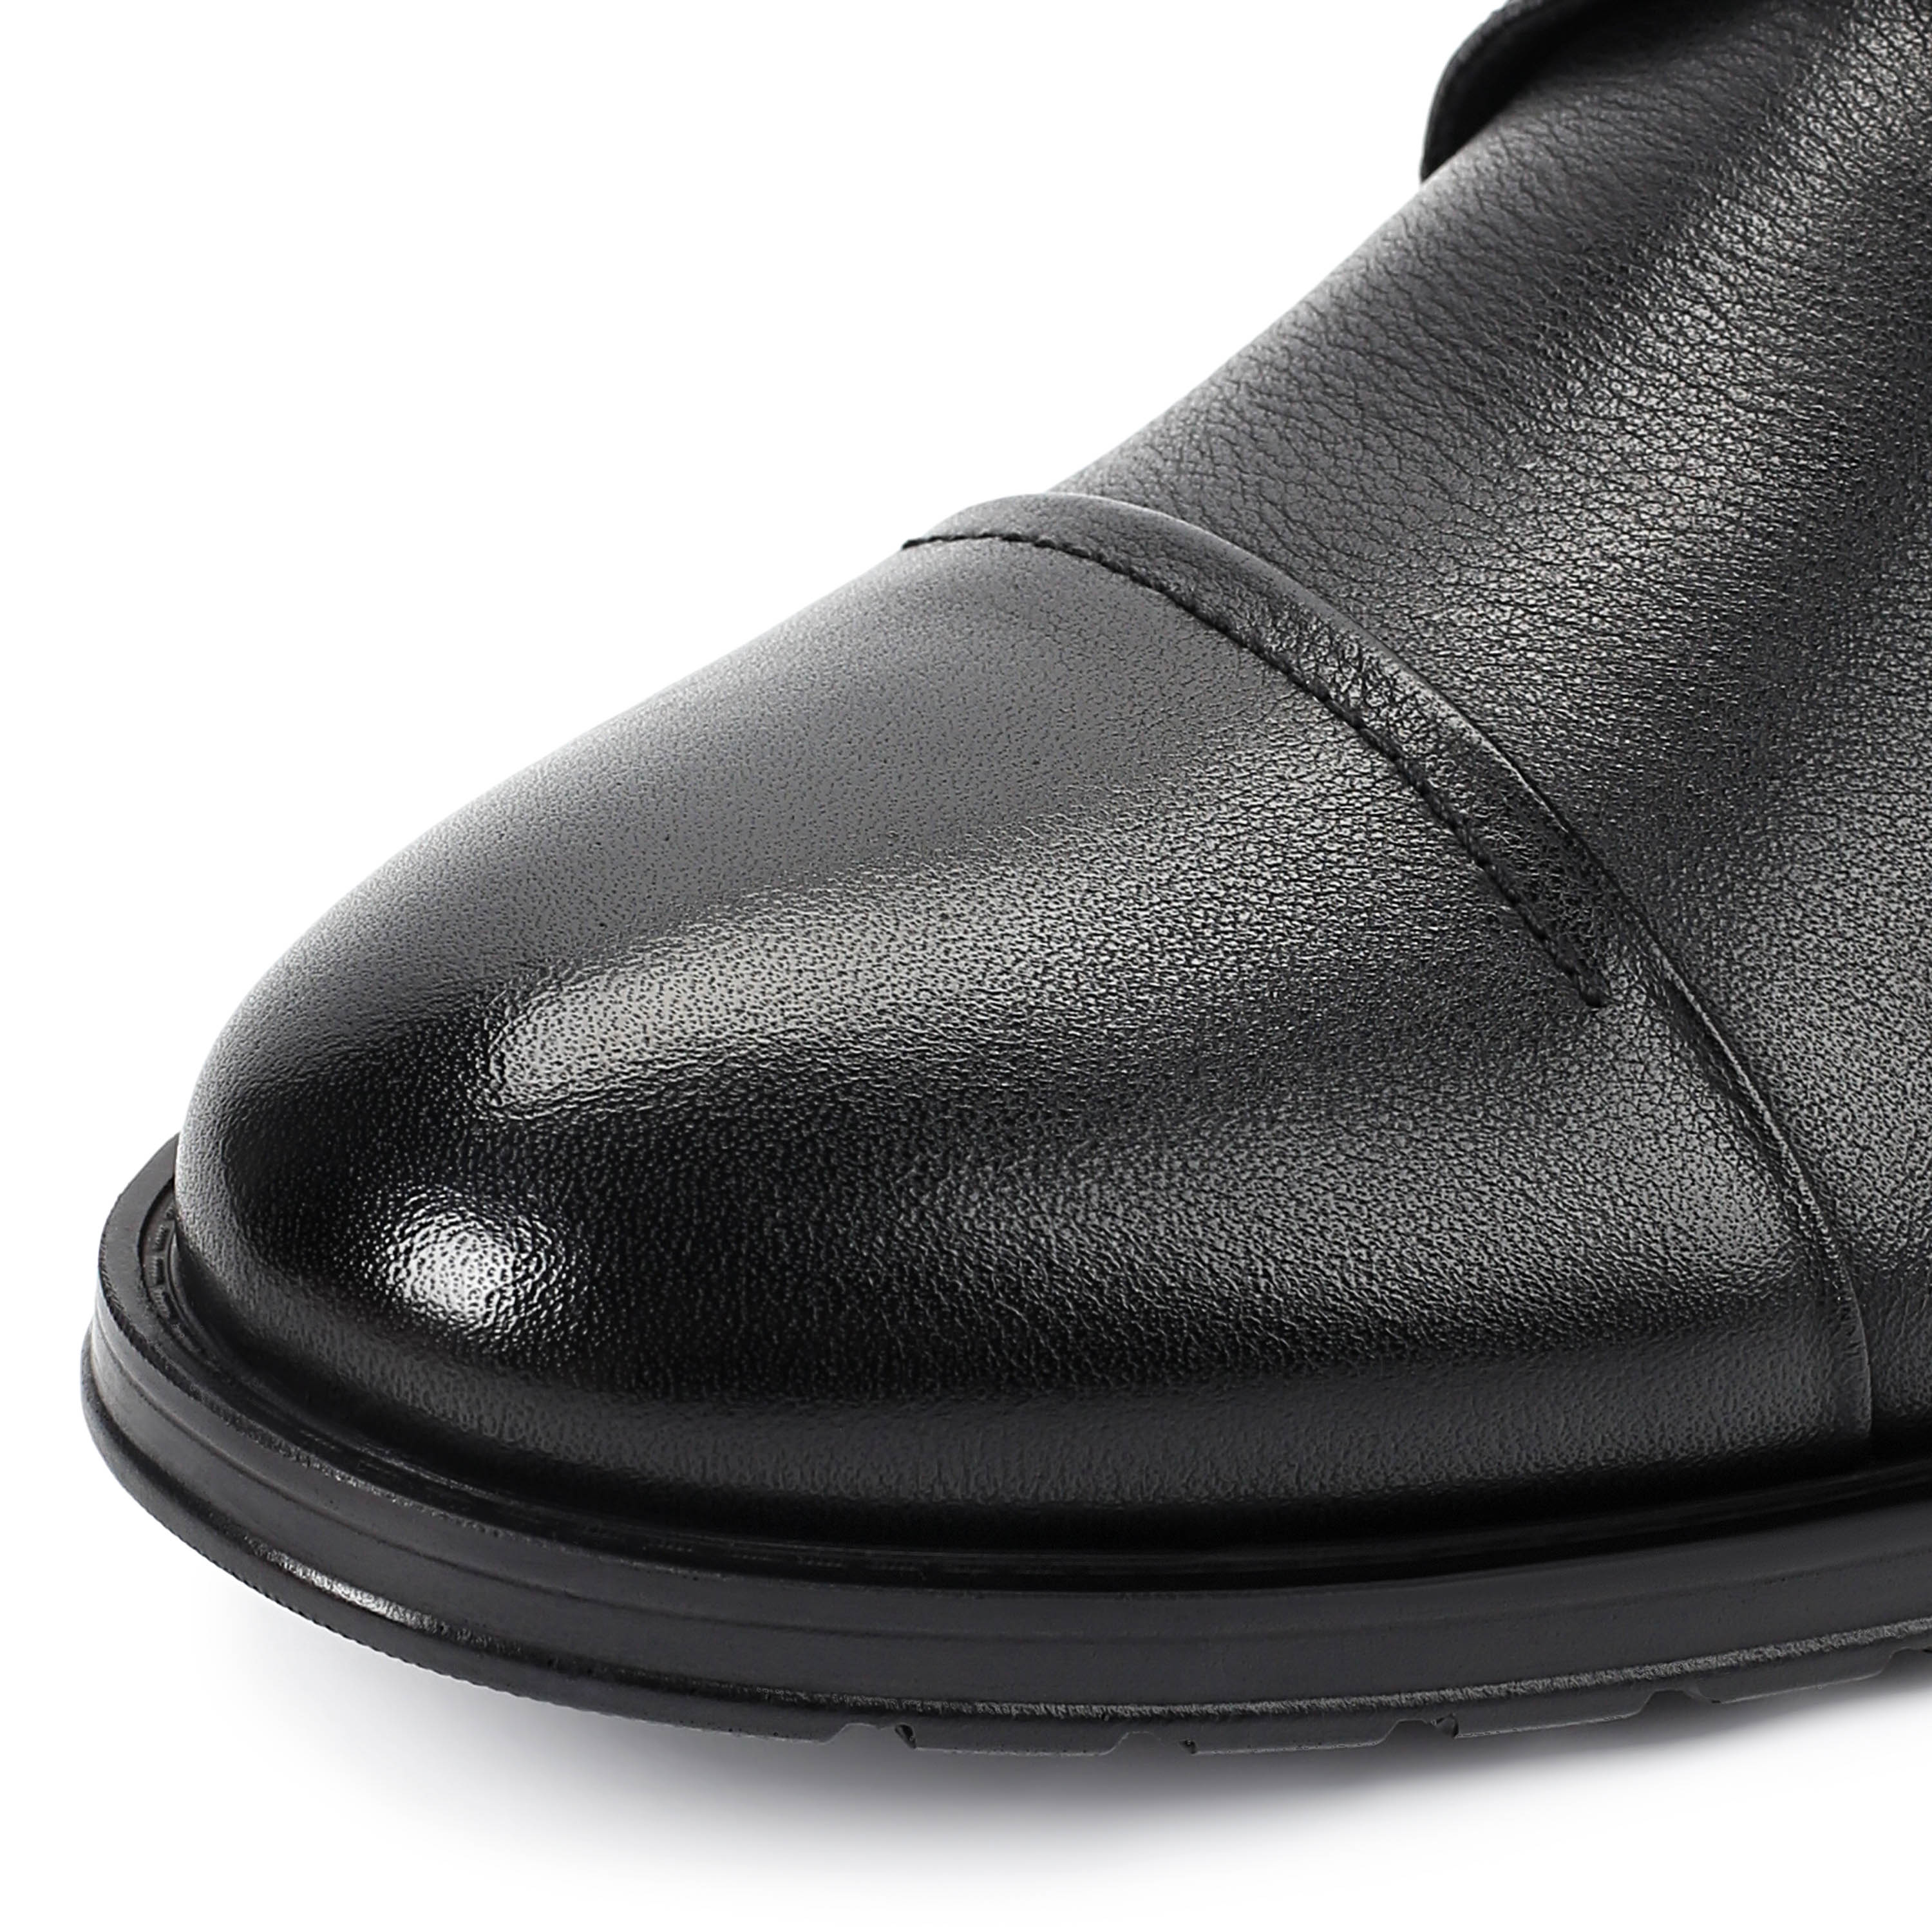 Туфли Thomas Munz 104-019E-1101, цвет черный, размер 41 дерби - фото 6